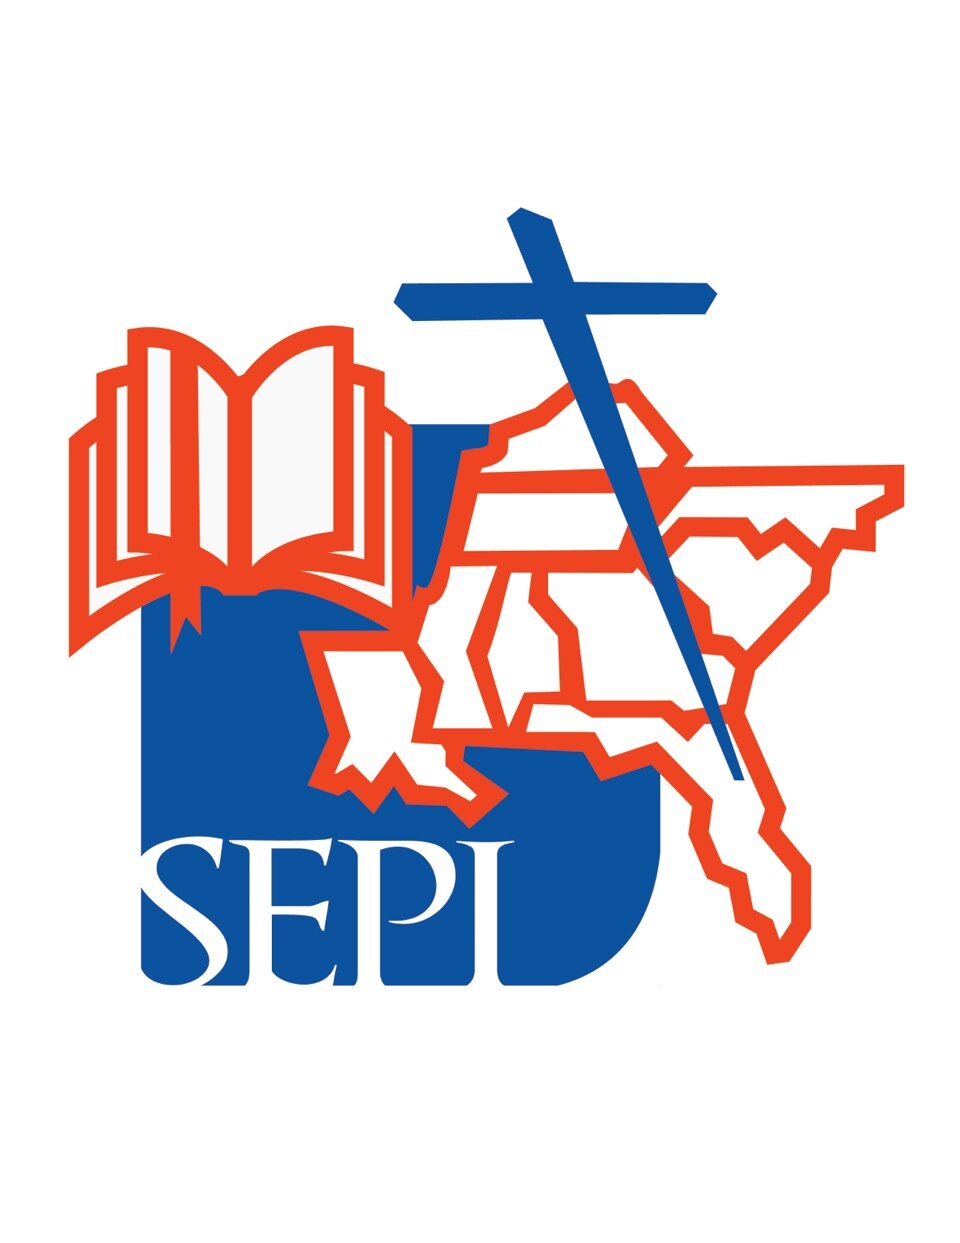 Oficina Regional de los Obispos Católicos del Sureste de los Estados Unidos para el Ministerio Hispano y su Instituto de Evangelización y Formación, SEPI.